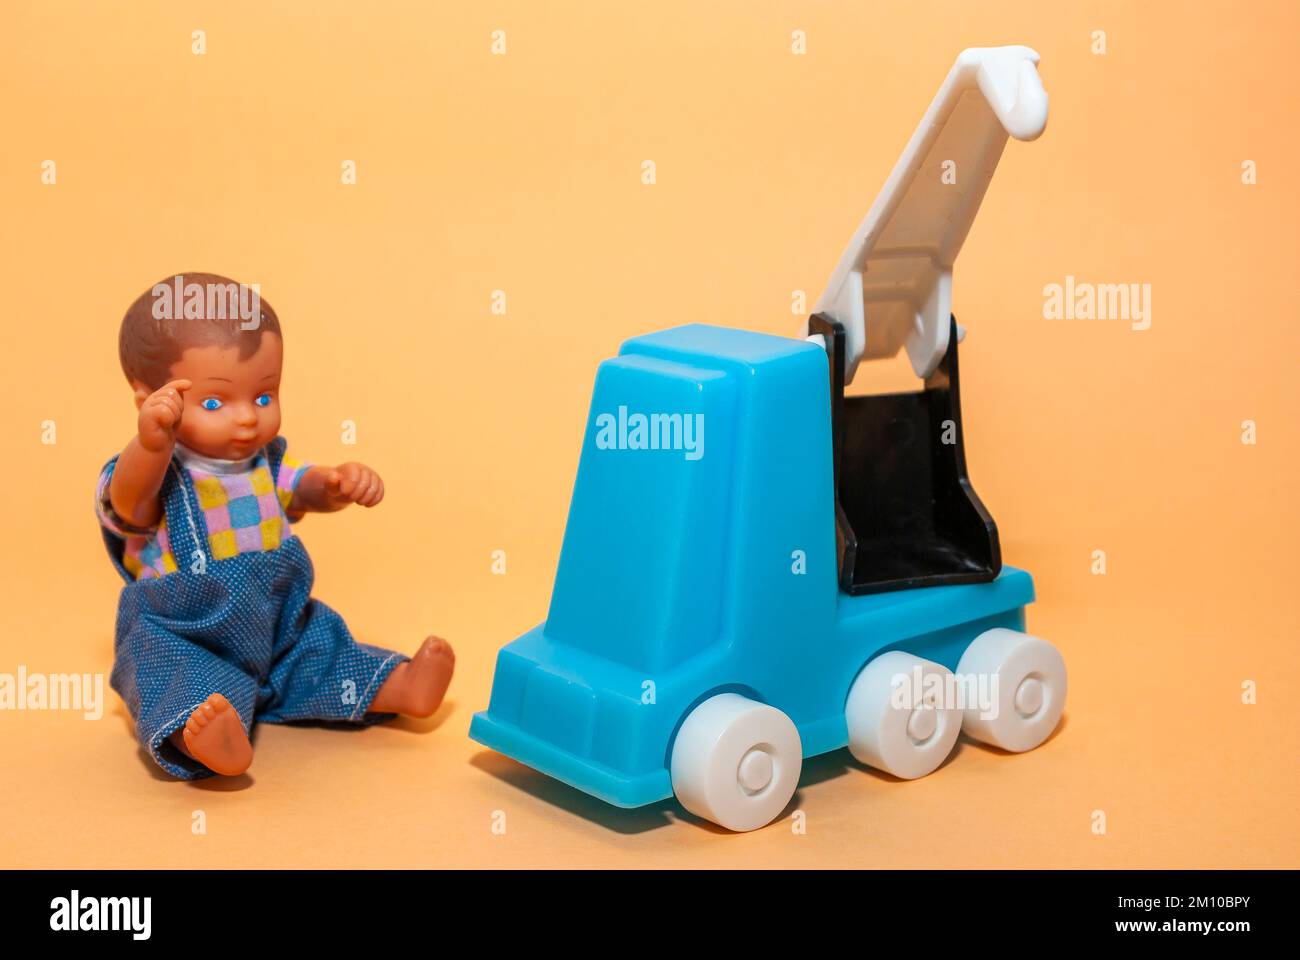 Devant un fond beige, une grue mobile et une poupée de garçon, le concept de jeu d'enfance et l'industrie de la construction. Banque D'Images